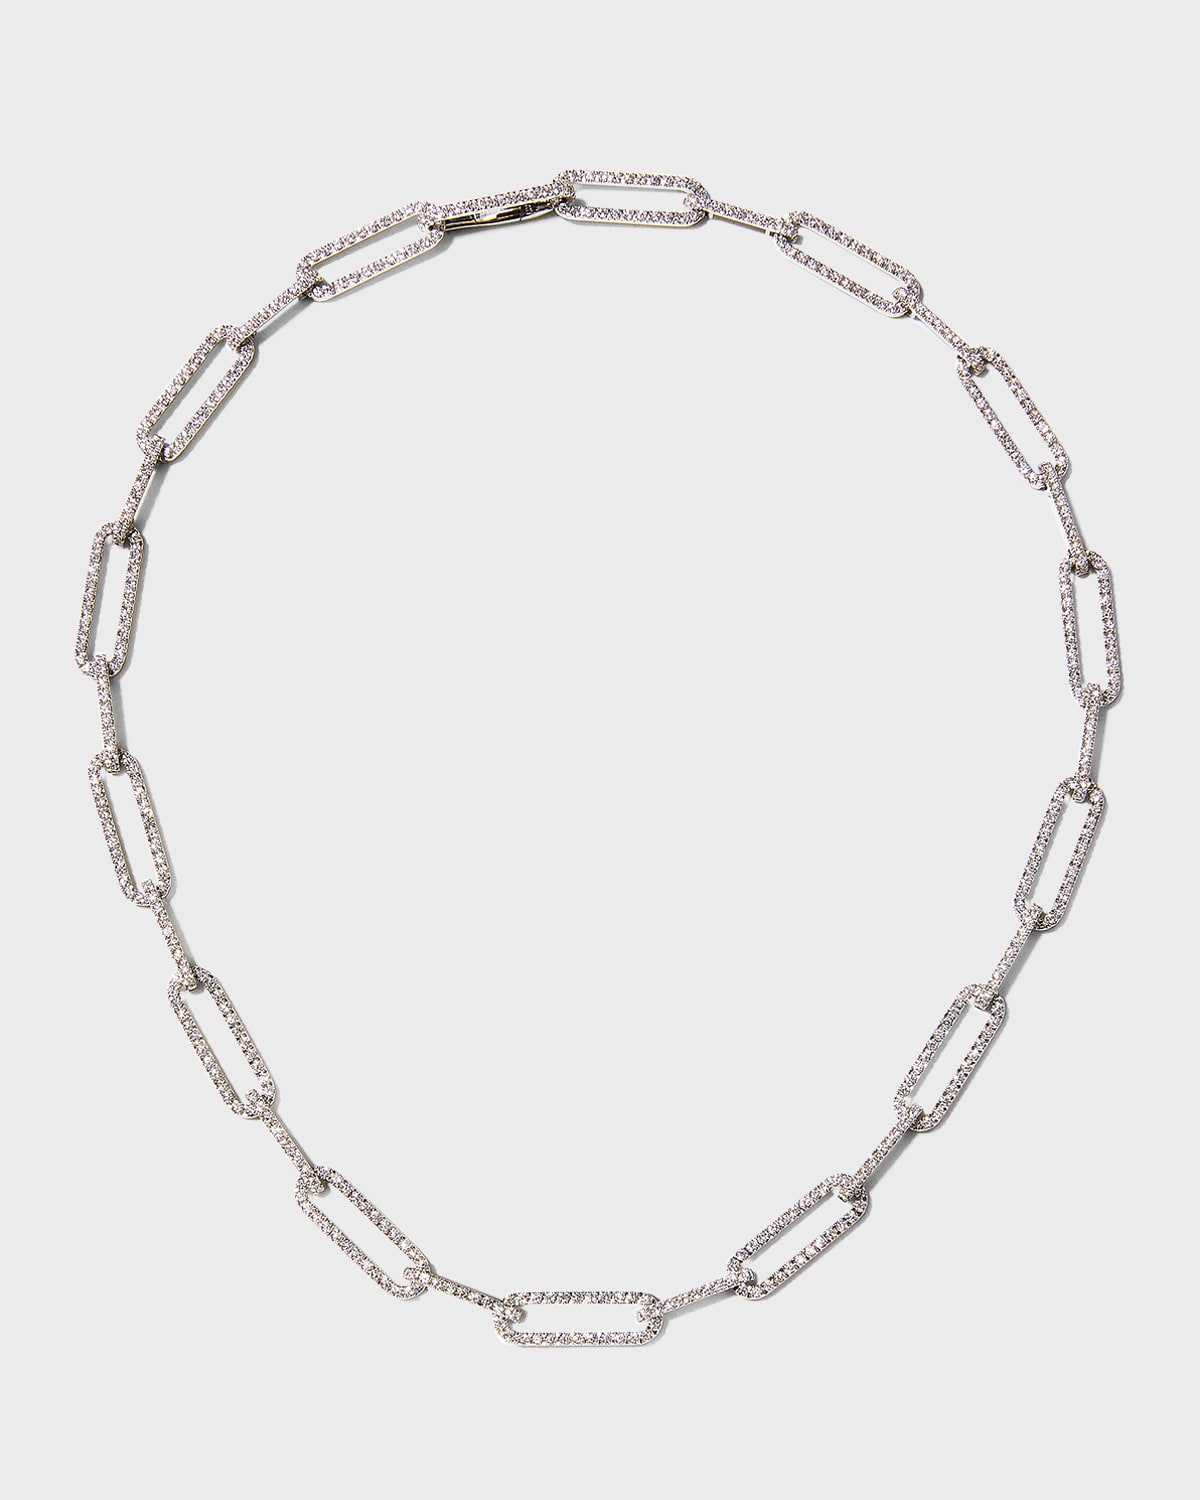 18K White Gold Pave Diamond Paperclip Link Necklace, 16"L